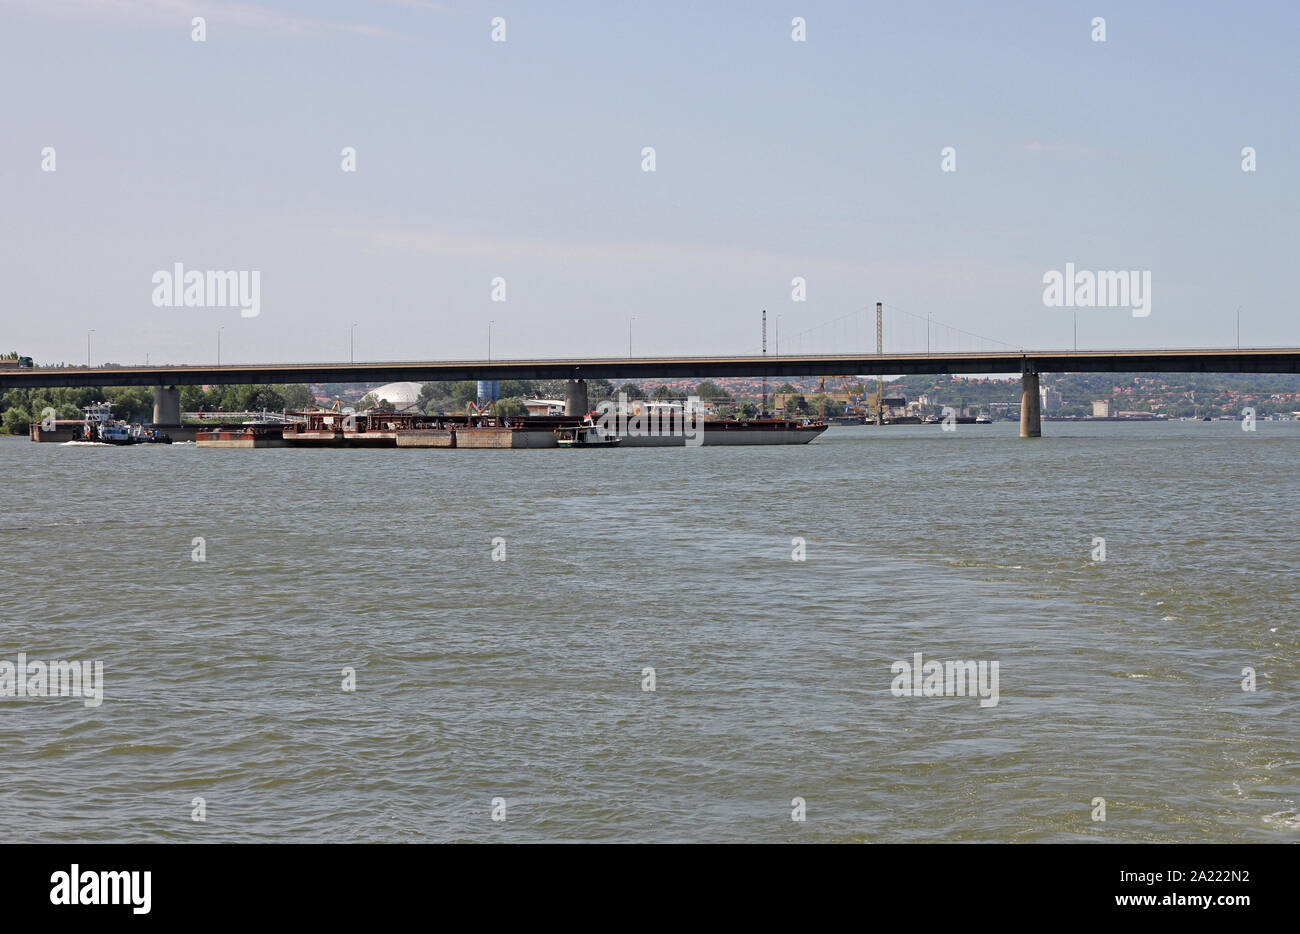 Bateaux et navires-citernes autour de la route numéro 14, pont de la rivière du Danube, Smederevo, en Serbie. Banque D'Images